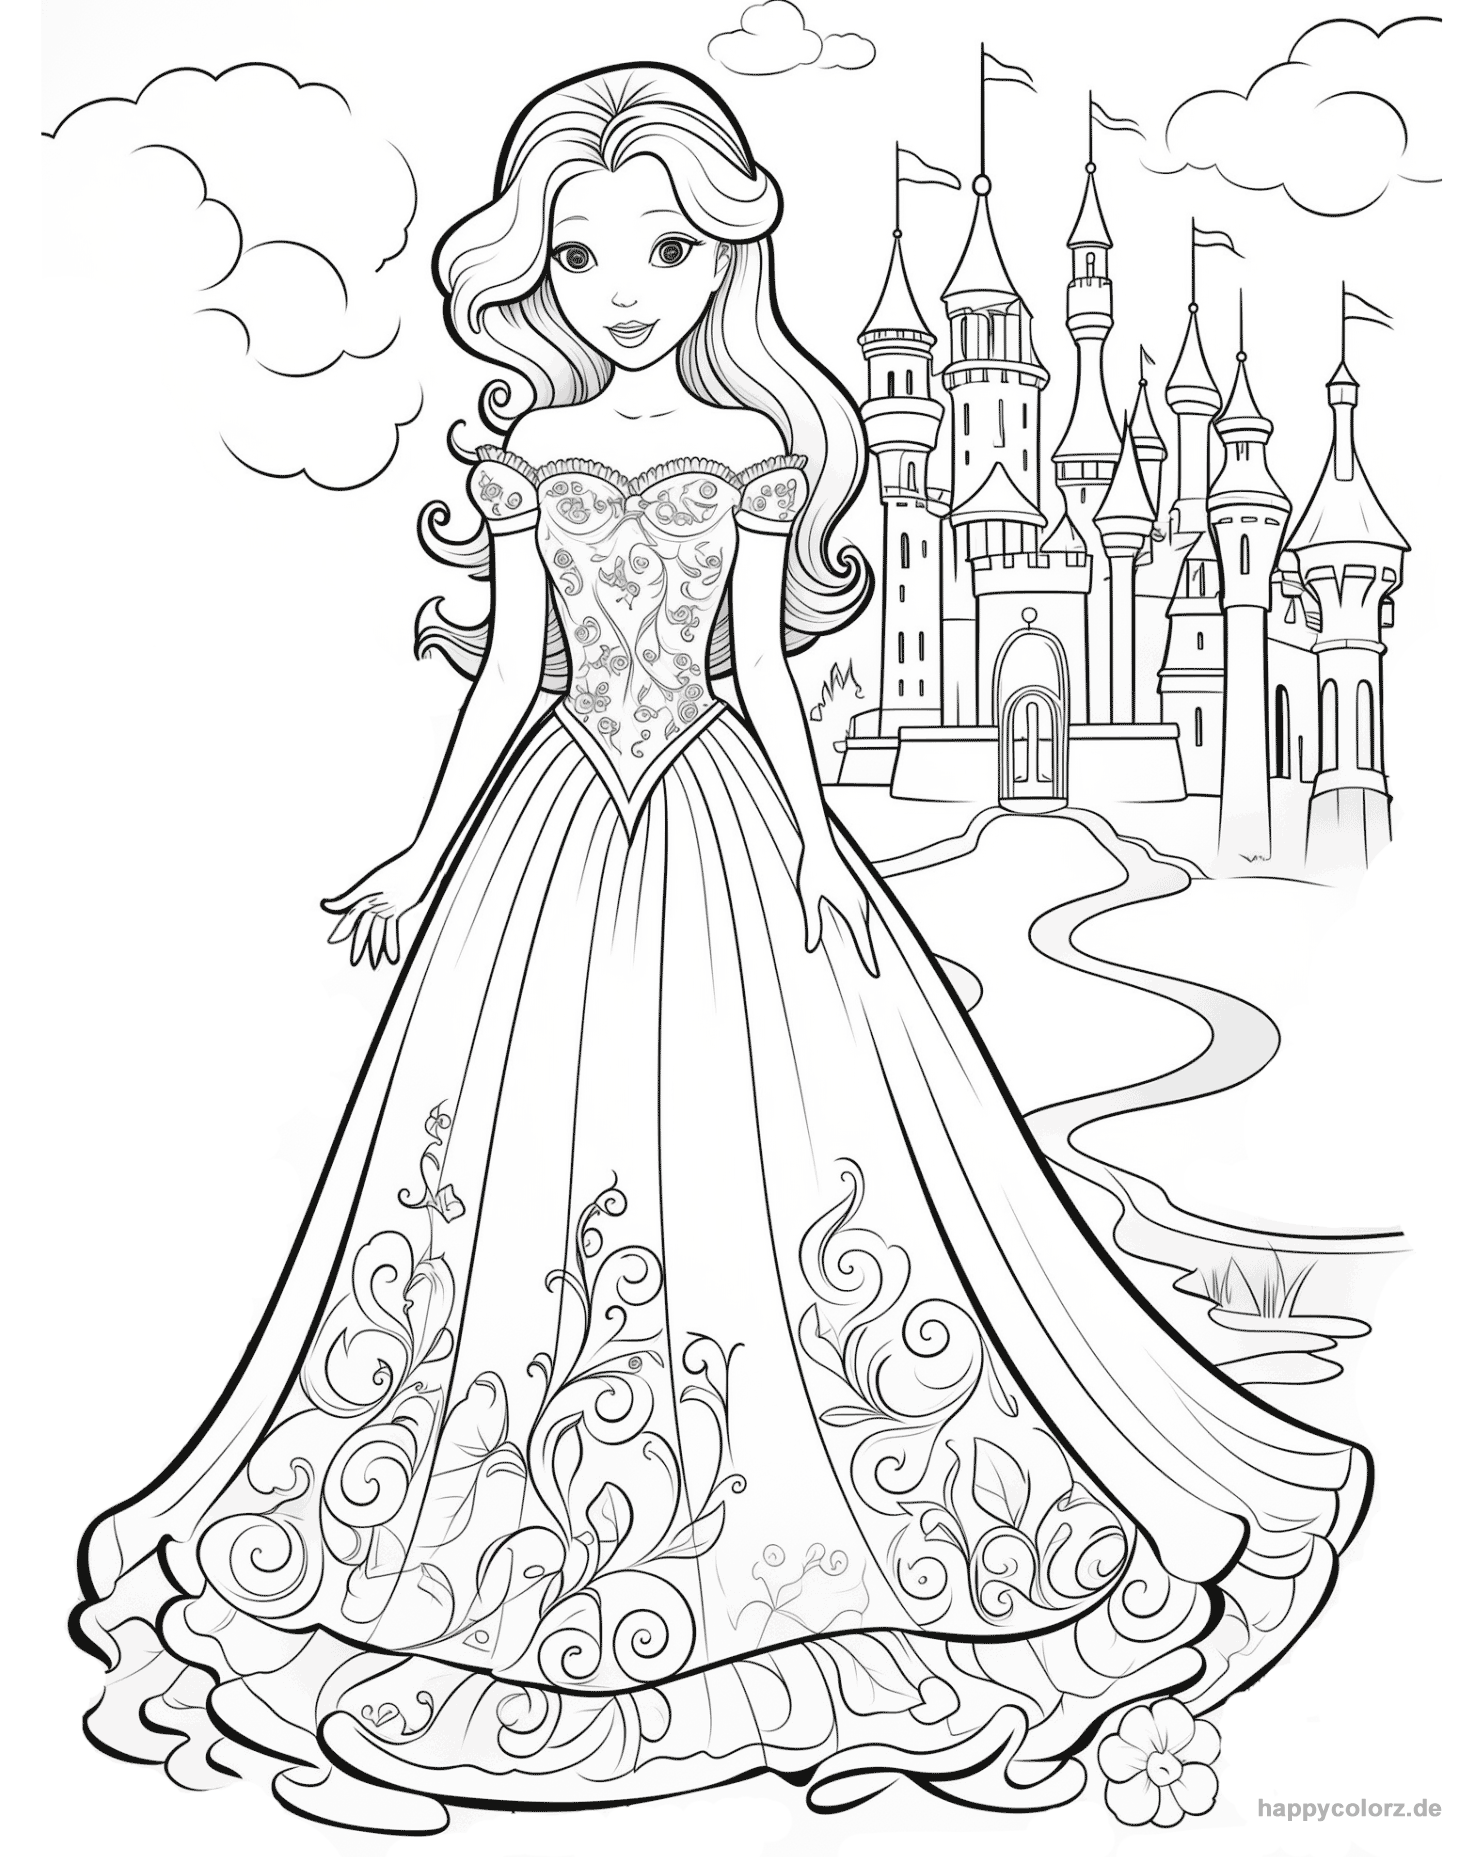 Ausmalbild Prinzessin mit Schloss im Hintergrund